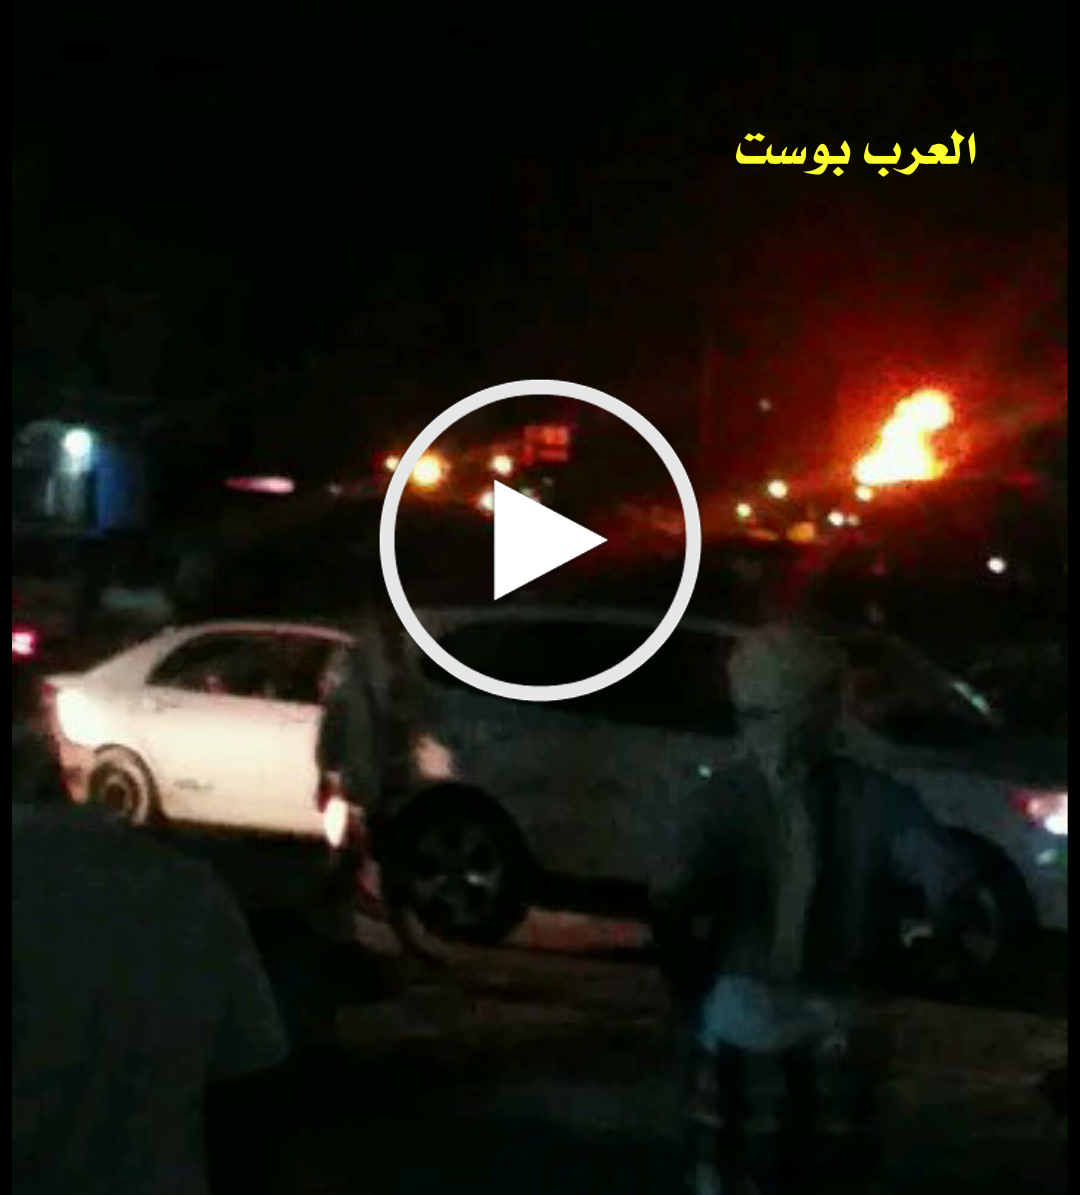 عااااجل انفجار احد خزانات الوقود لشركة مصافي عدن جنوب اليمن وانباء تفيدبتعرضهالقصف حوثي بطائرة مسيرة